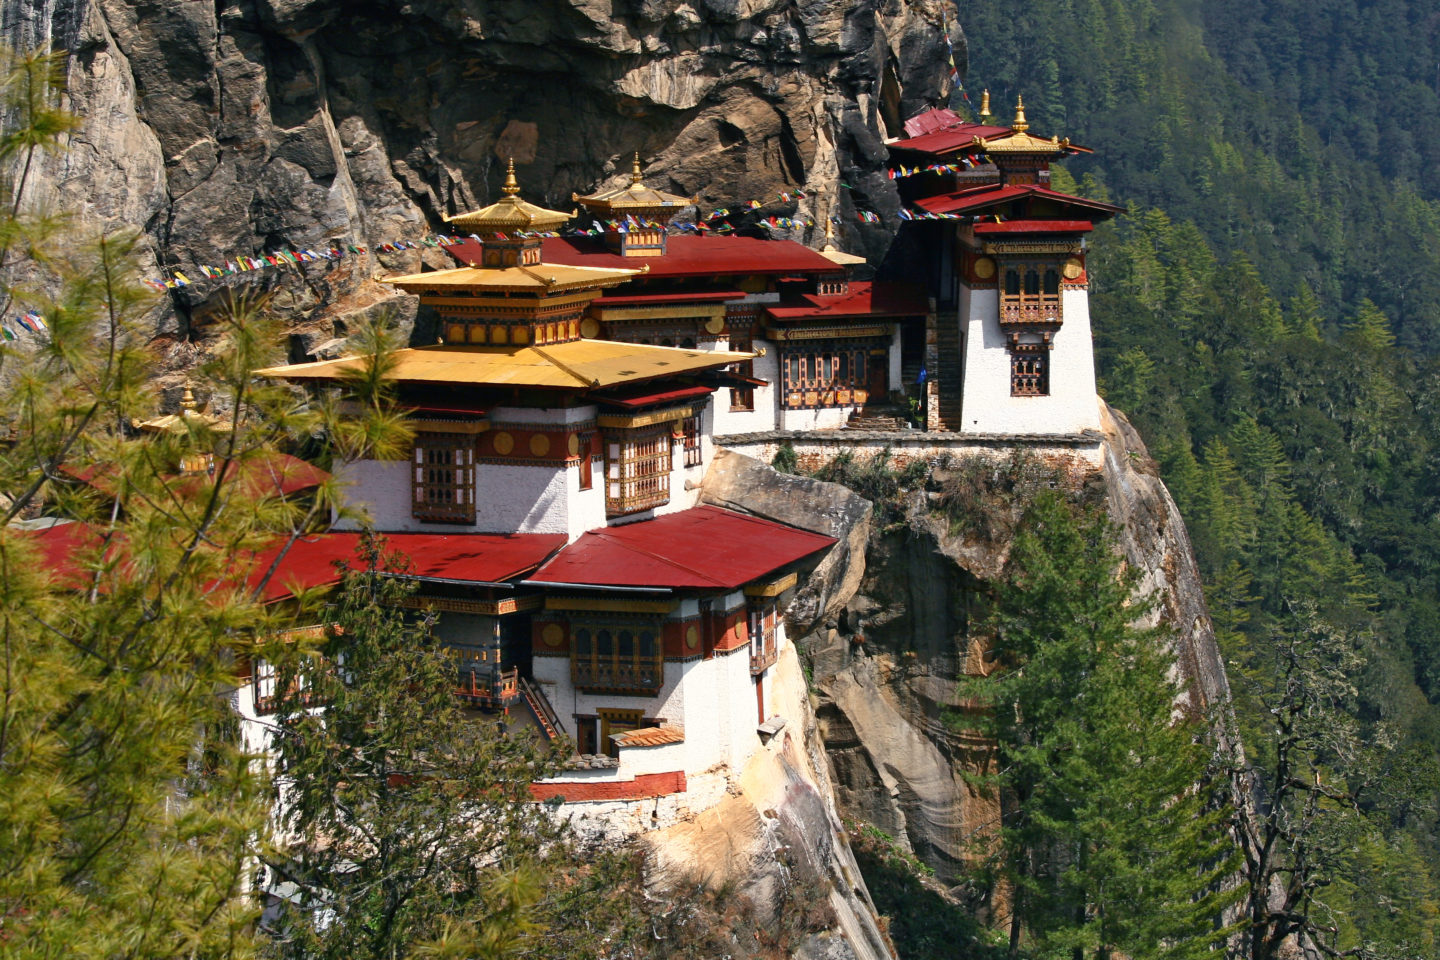 voyage bhoutan